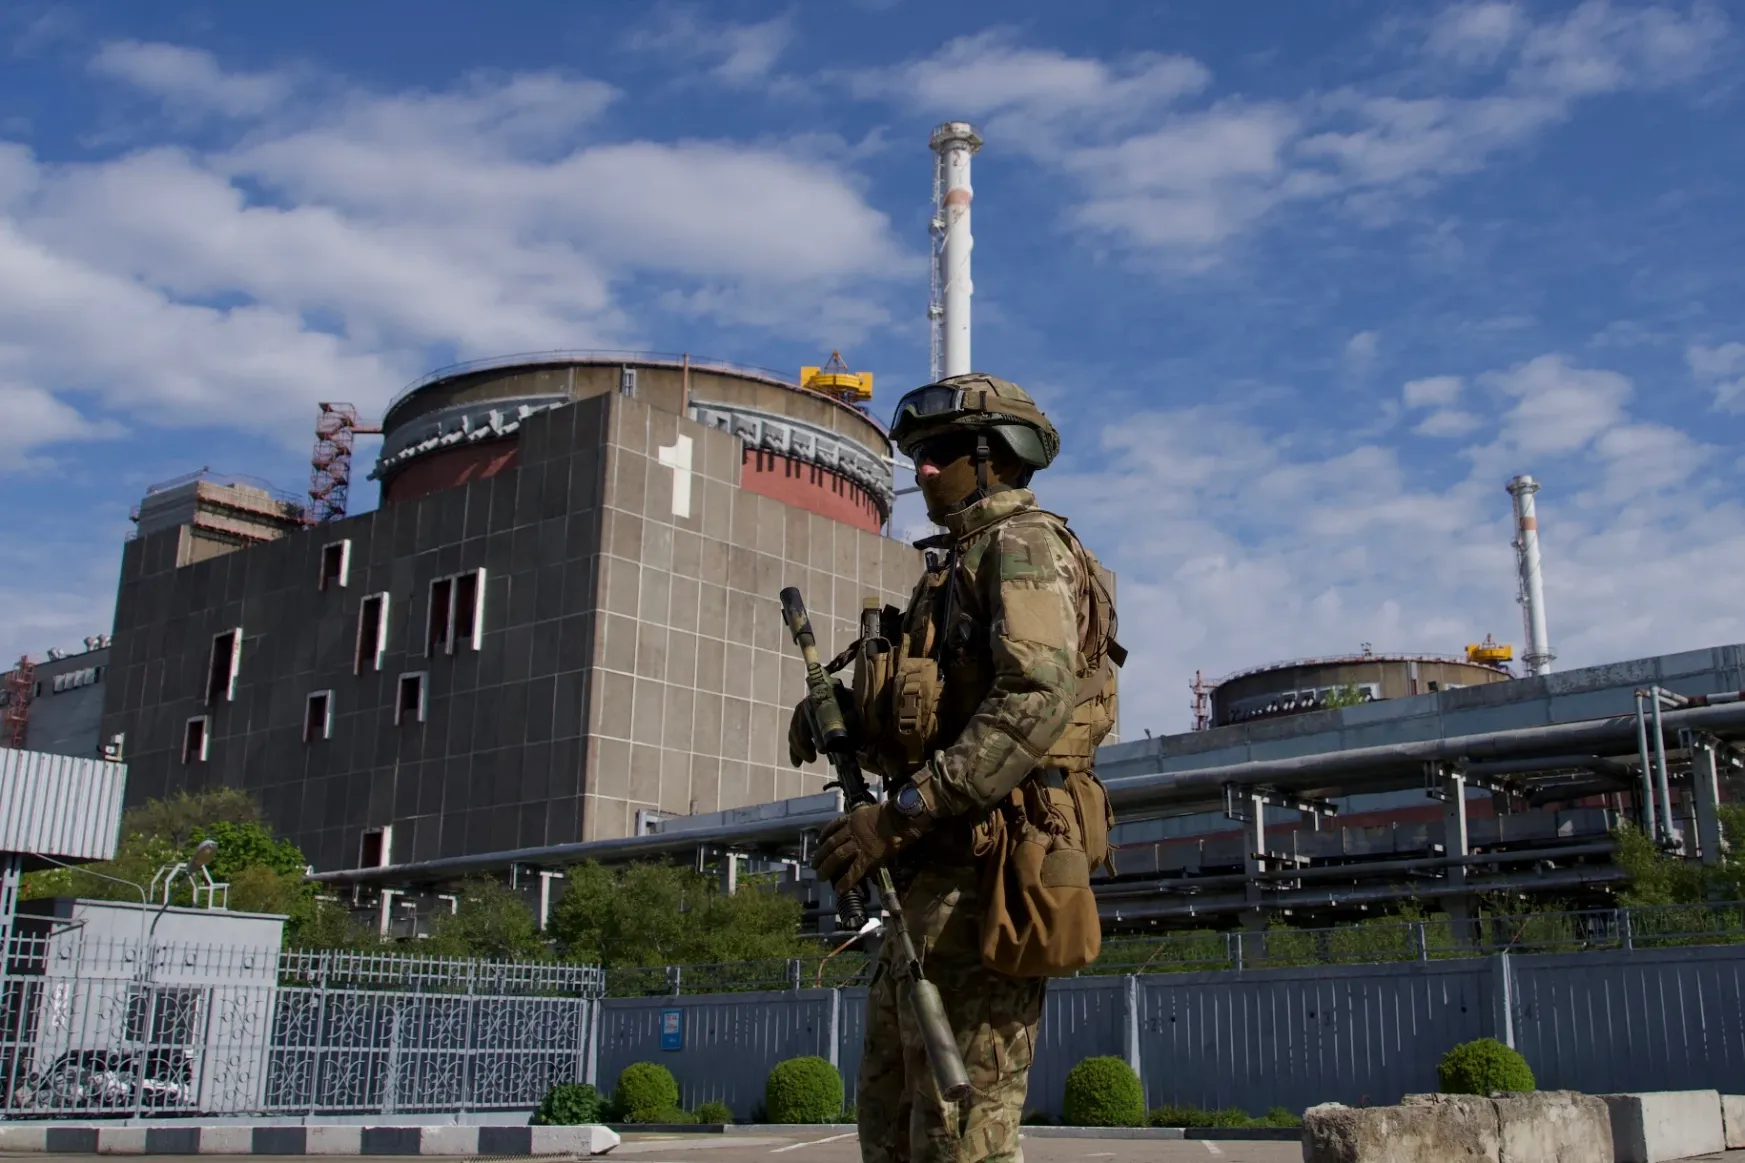 Két hét után ismét jönnek az adatok az orosz kézen lévő zaporizzsjai atomerőműből